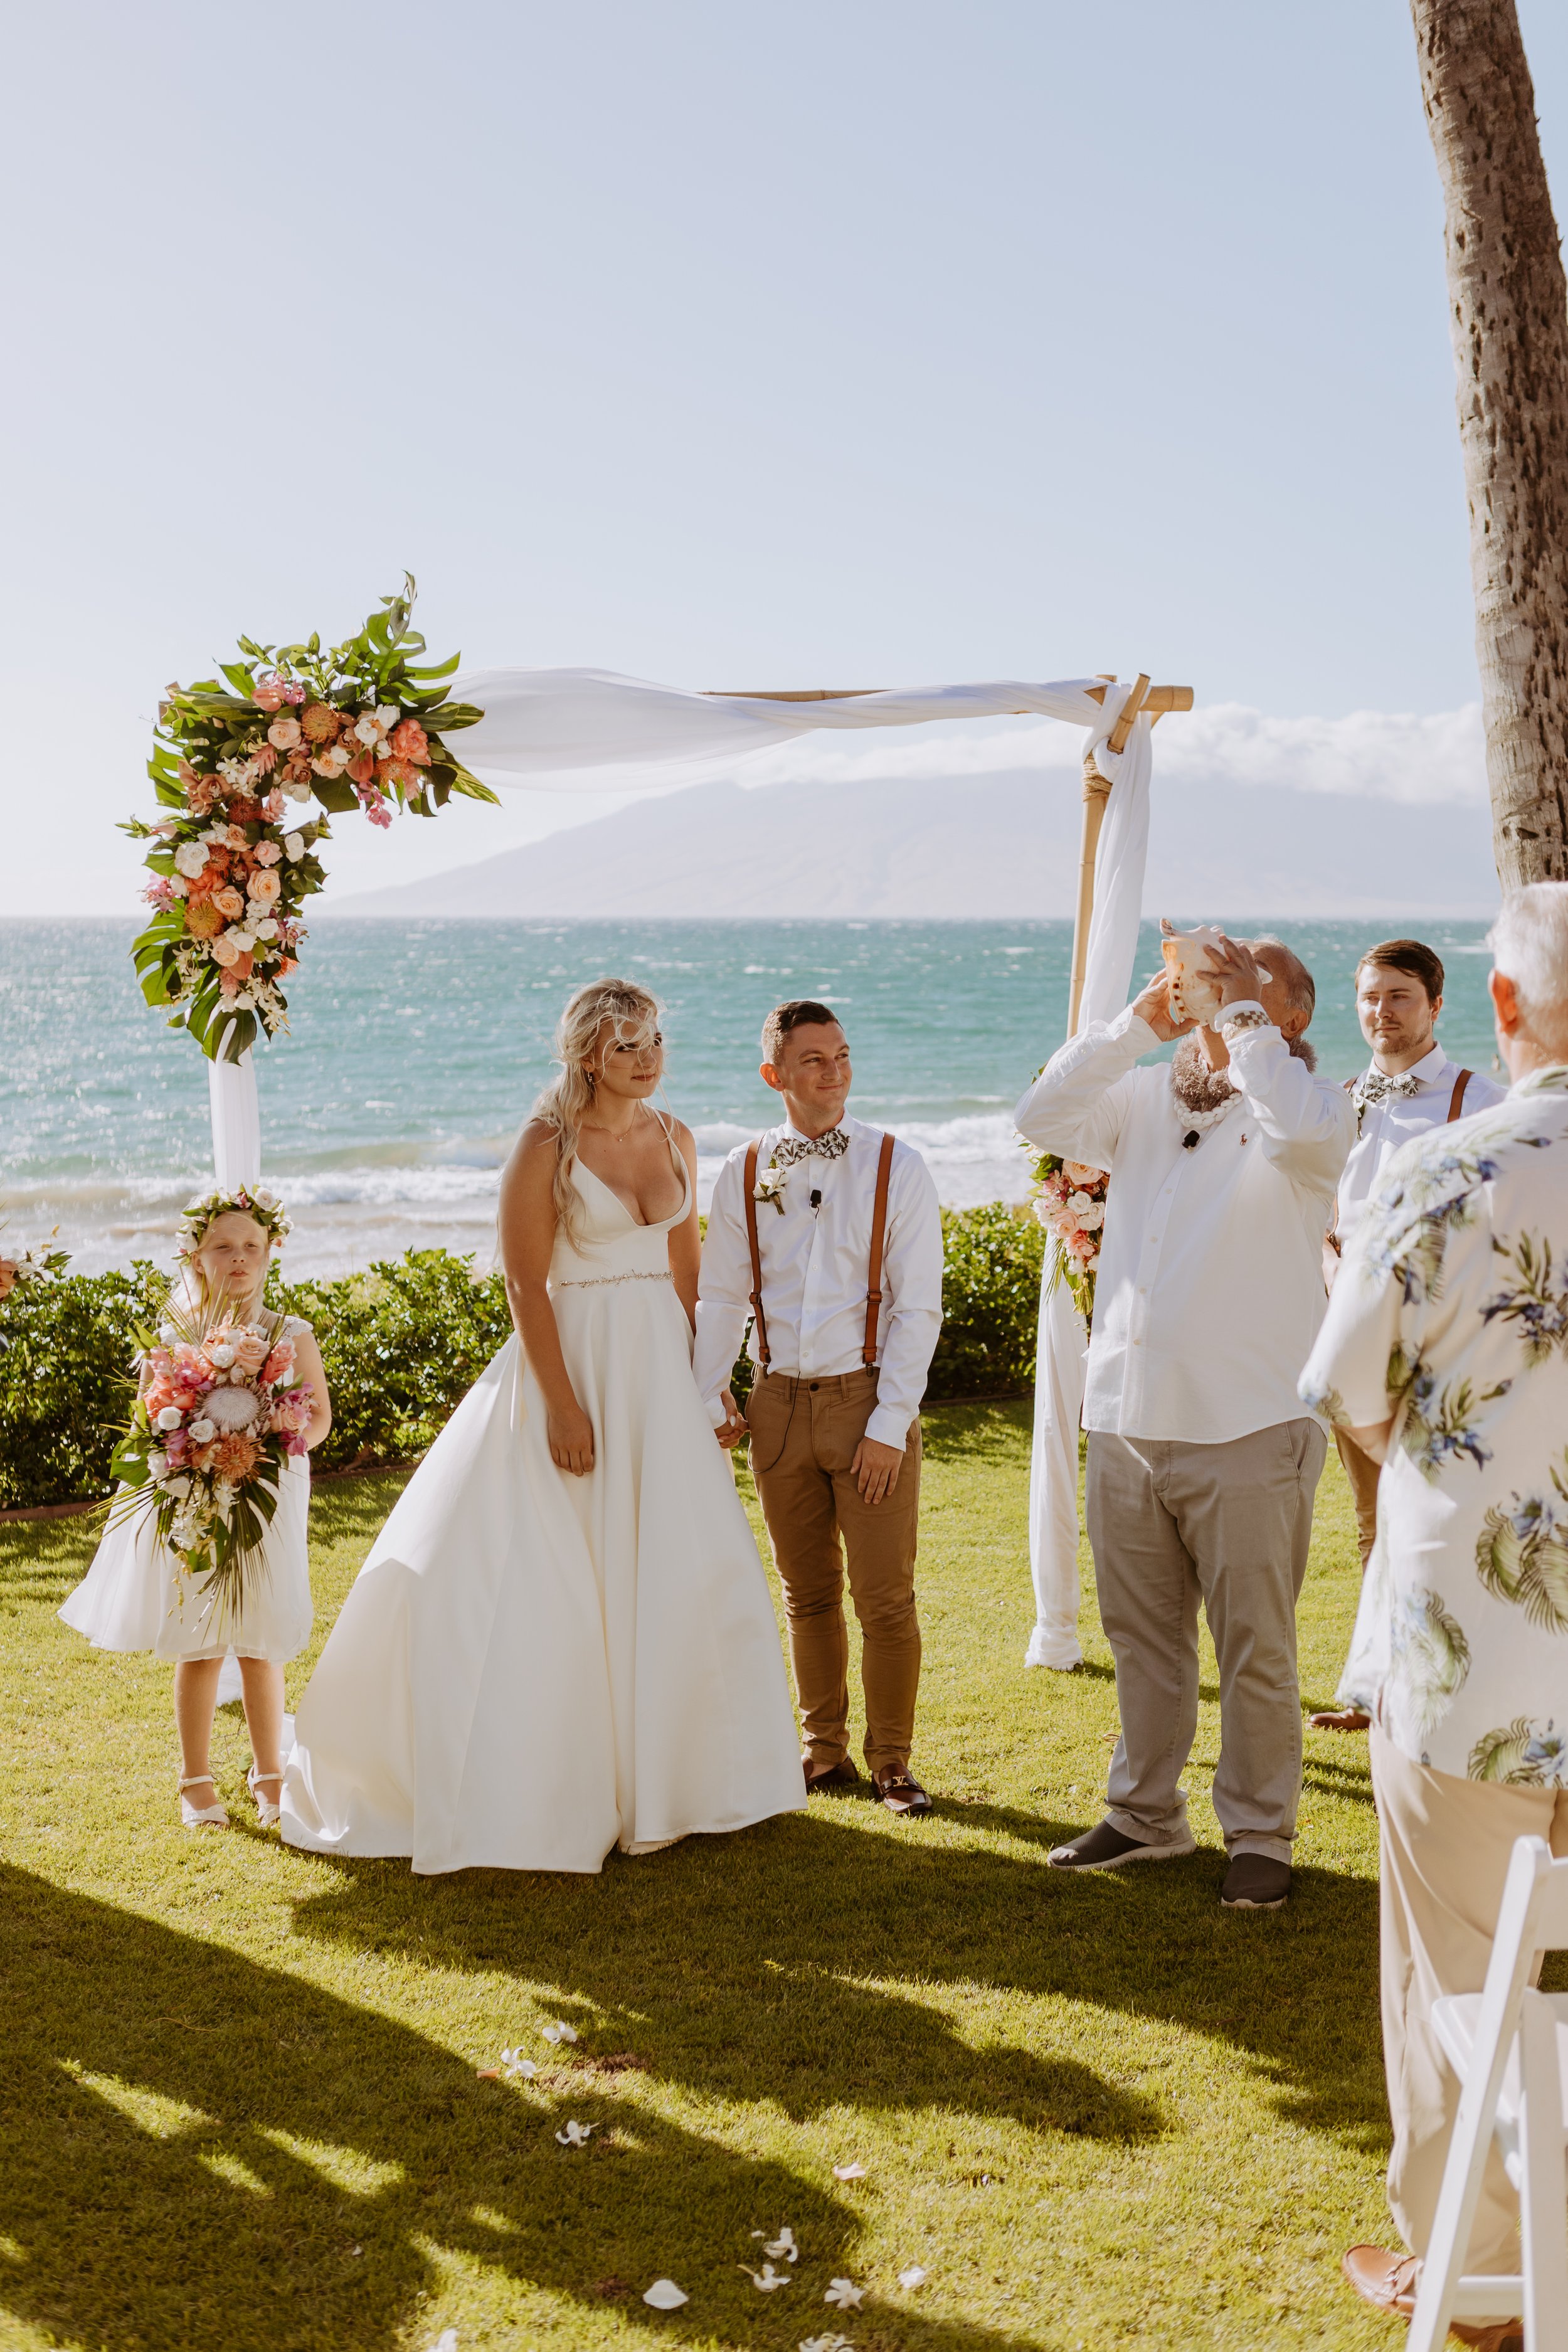 Makaili + Mac Lakin | Grand Wailea Maui Wedding - Hawaii Photographer326.jpg